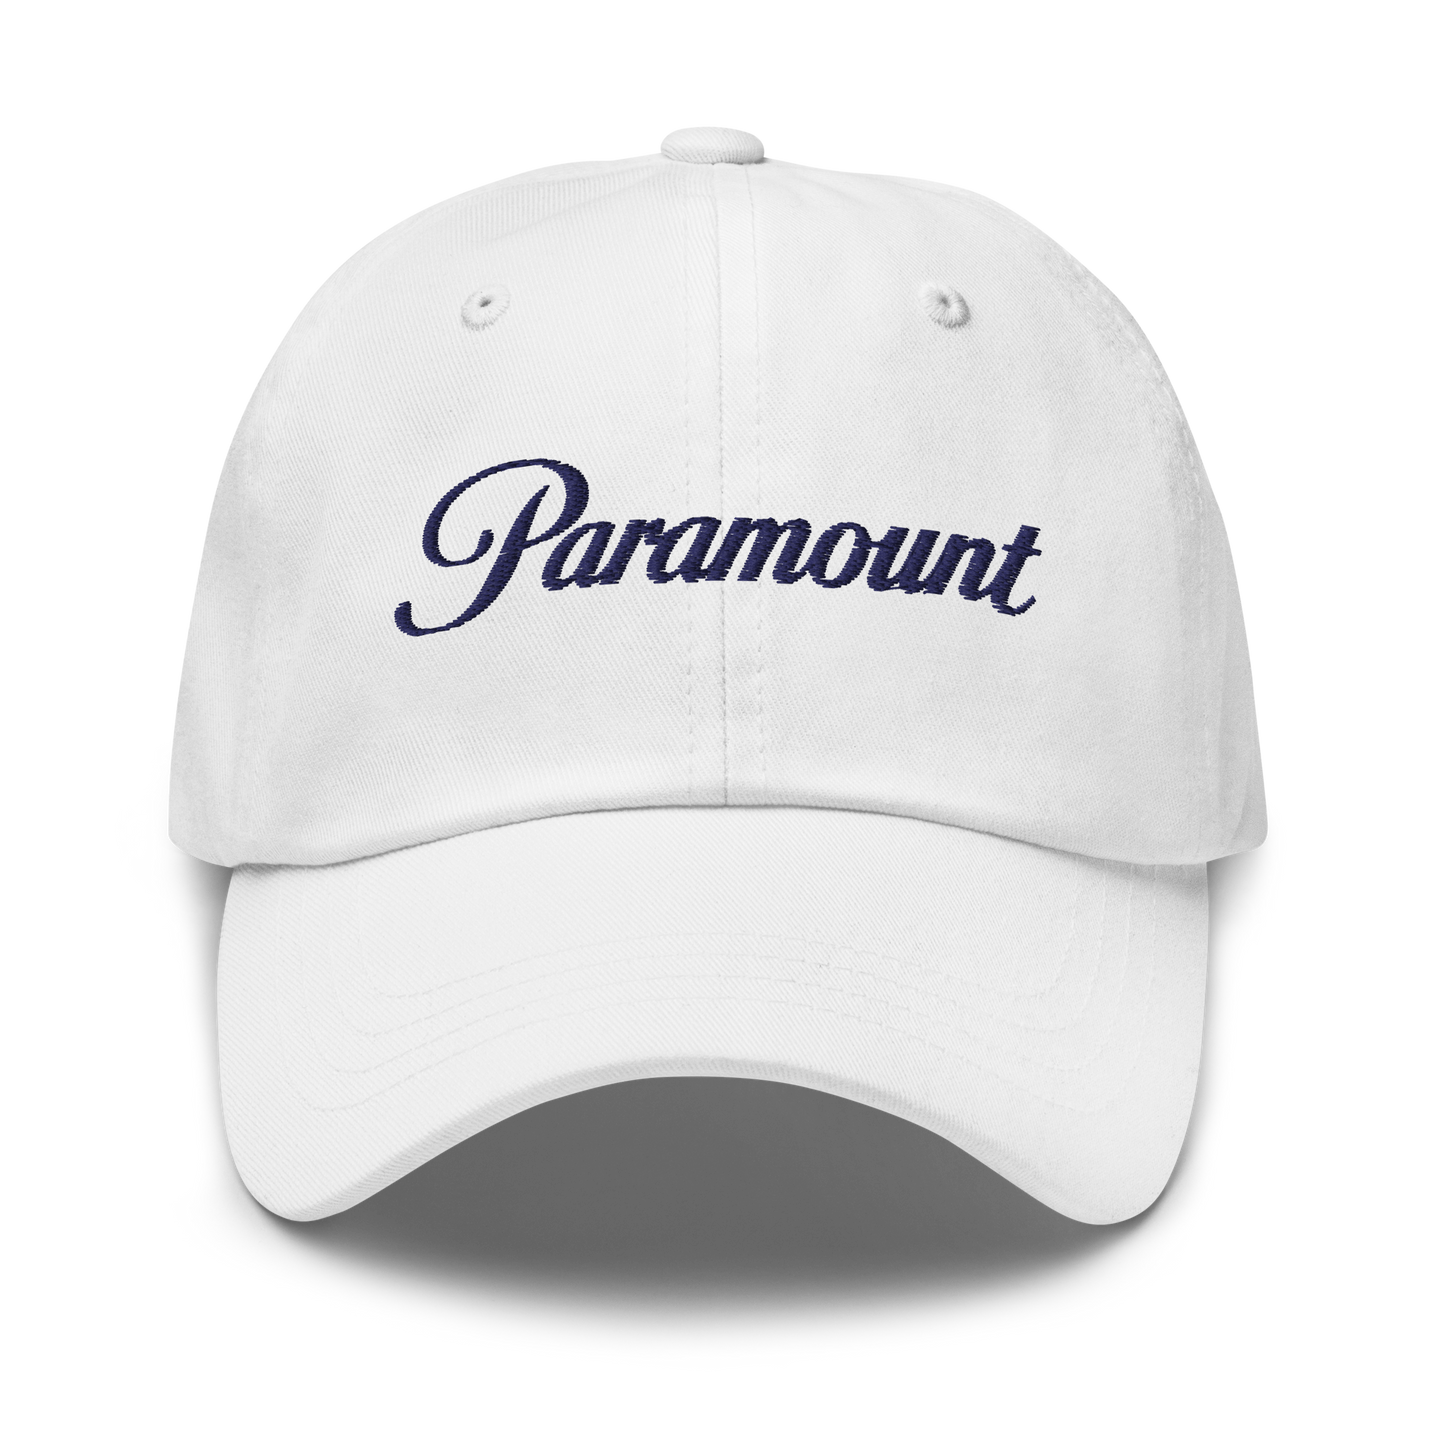 Paramount Script Classic Dad Hat